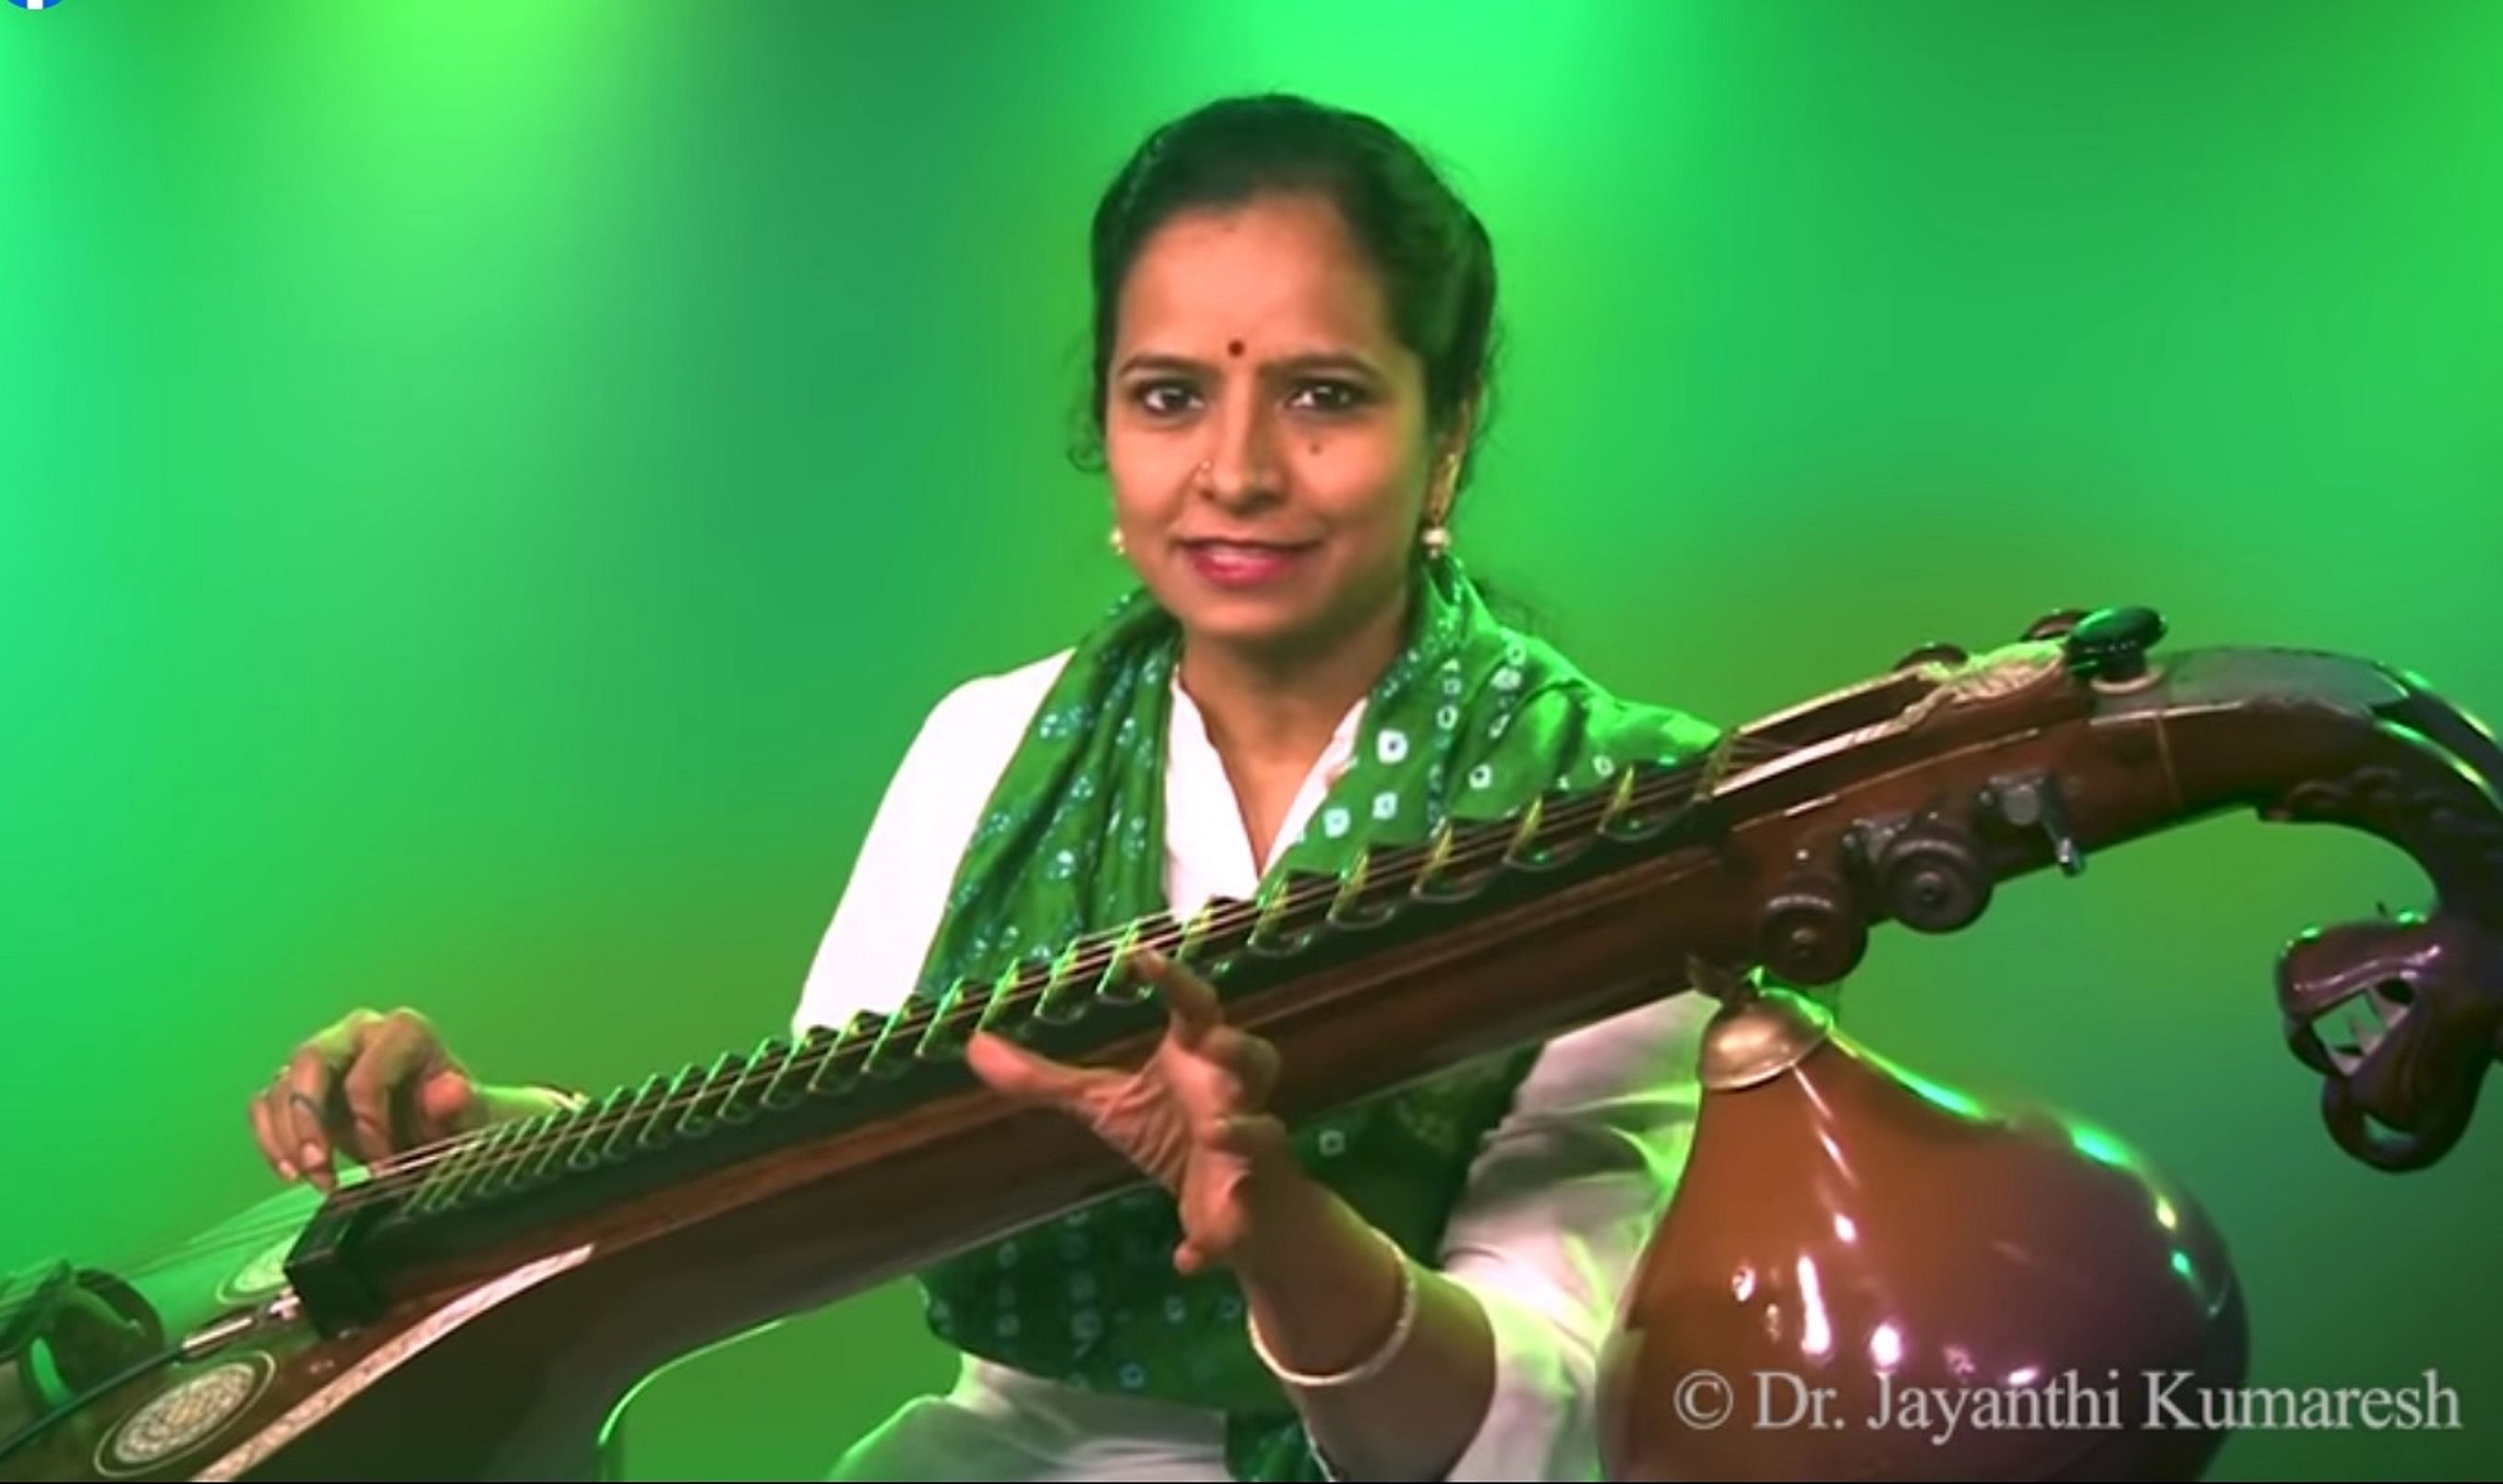 Jayanthi Kumaresh in an episode of ‘Cup O’ Carnatic Kids’.